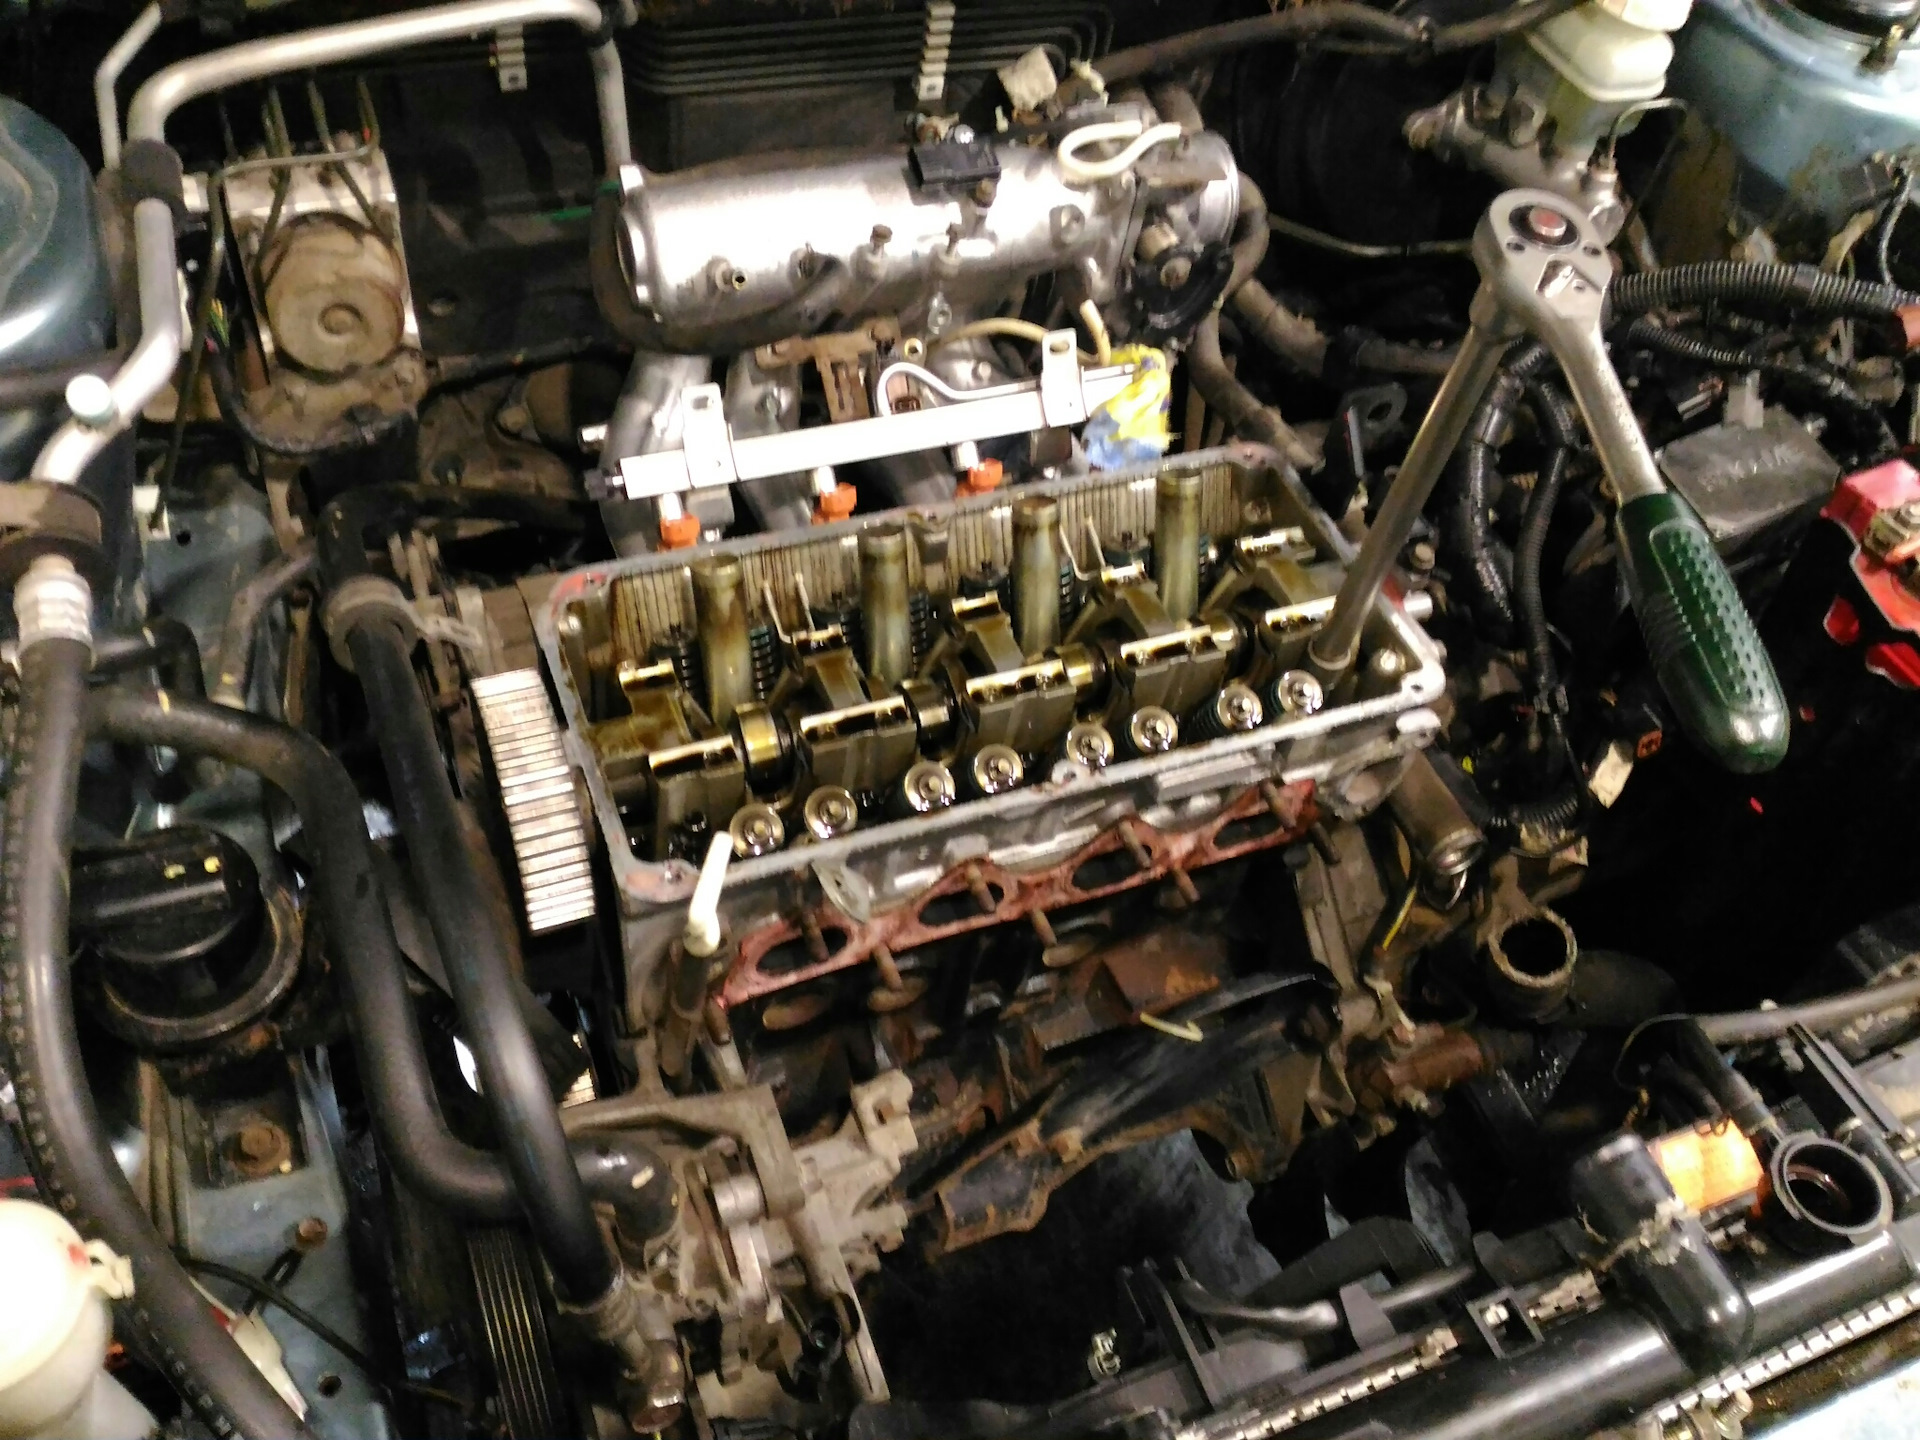 Lancer 9 1.6 двигатель. ДВС Митсубиси Лансер 9 1.6. ДВС Митсубиси Лансер 9. Лансер 9 1.6 двигатель. Двигатель ланцер 9 1.6.